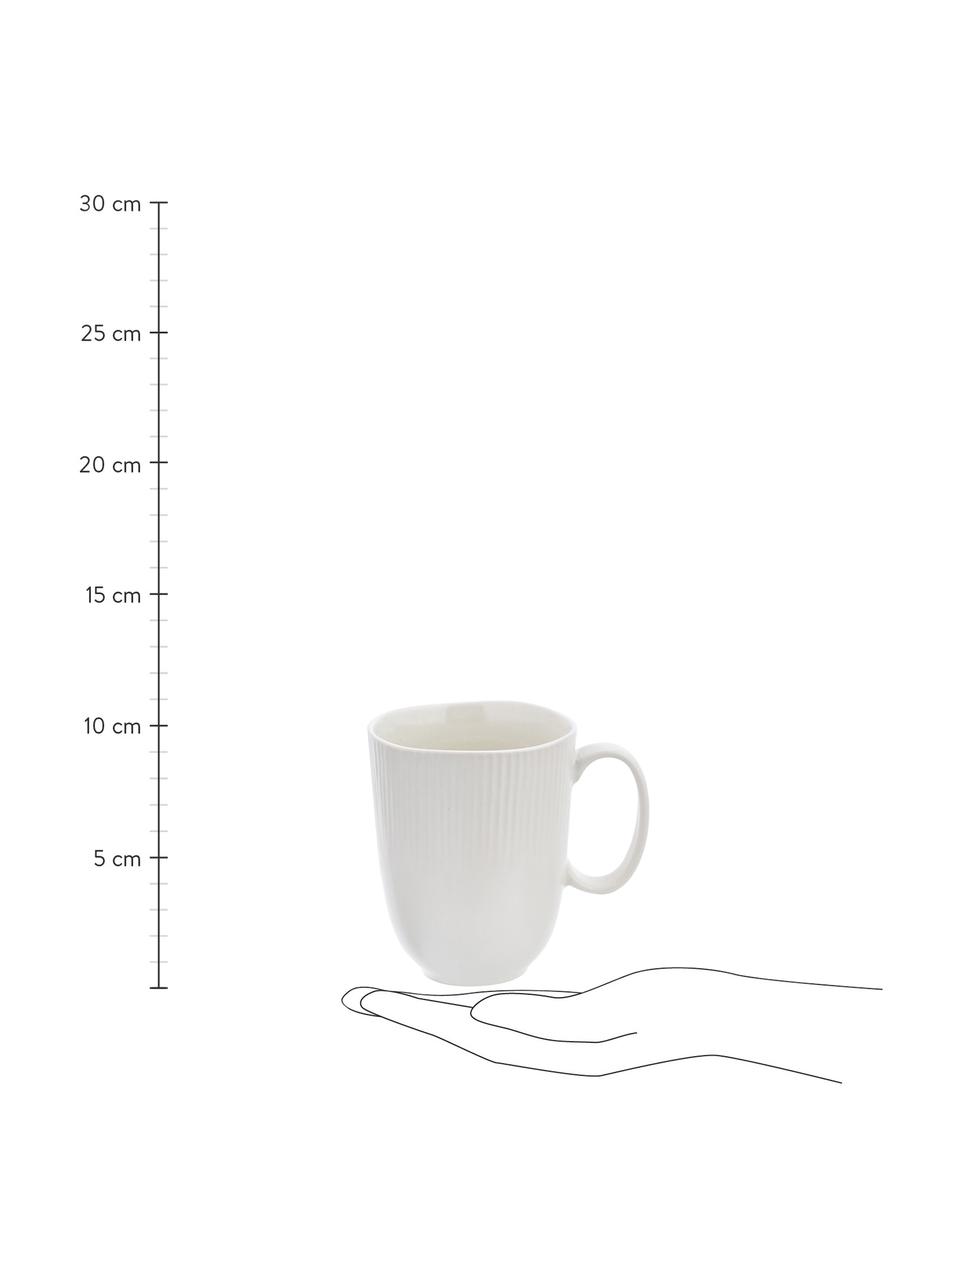 Handgemachte Tassen Sandvig mit leichtem Rillenrelief, 4 Stück, Porzellan, durchgefärbt, Gebrochenes Weiß, Ø 10 x H 12 cm